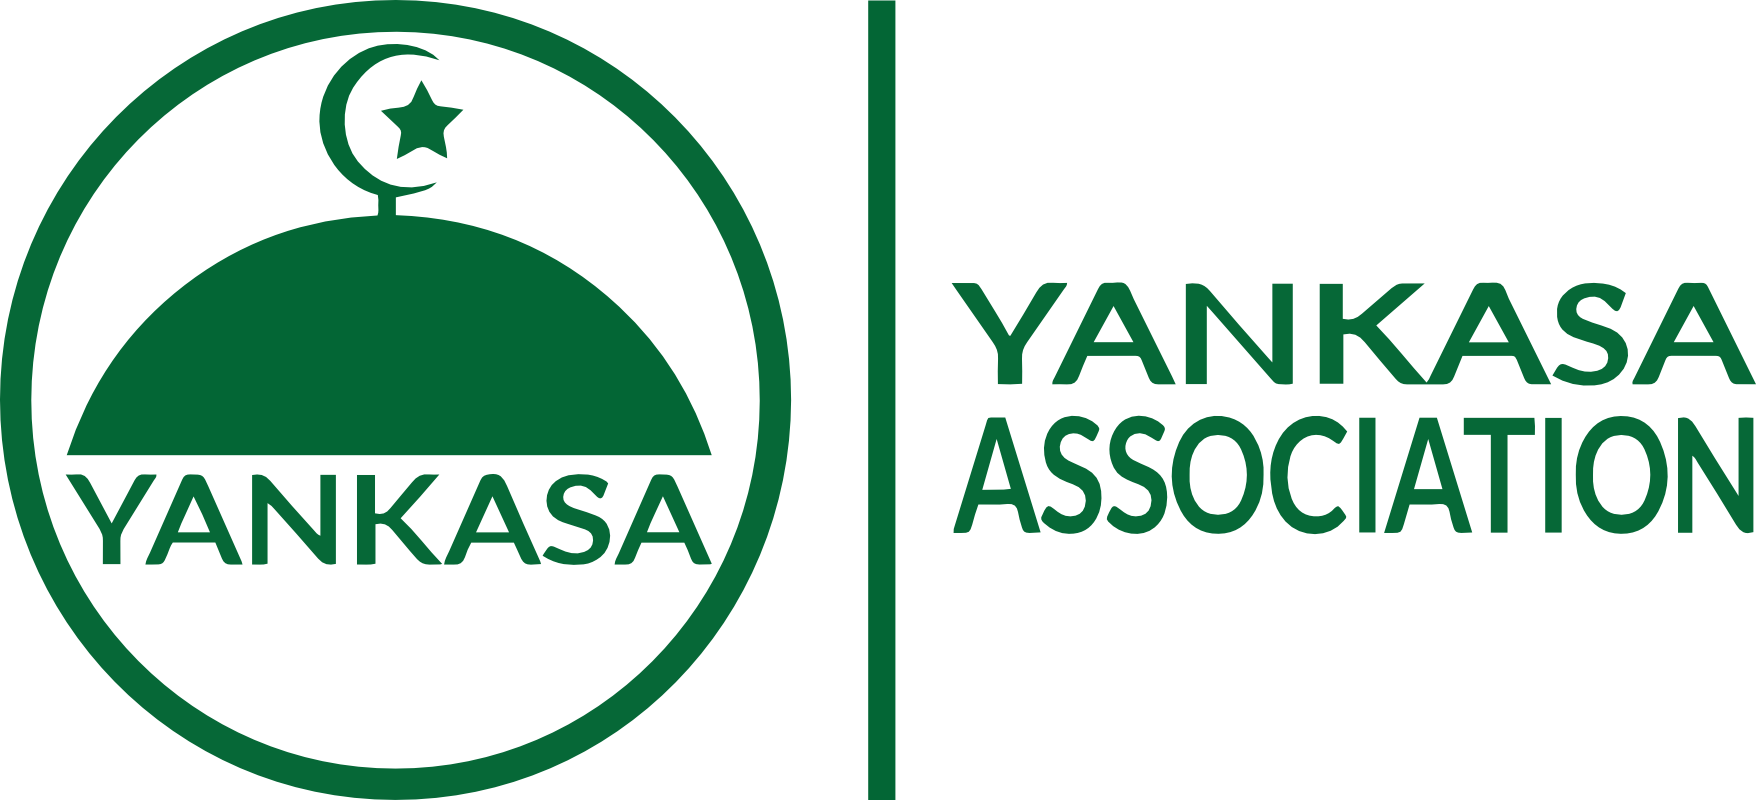 Yankasa Association of USA